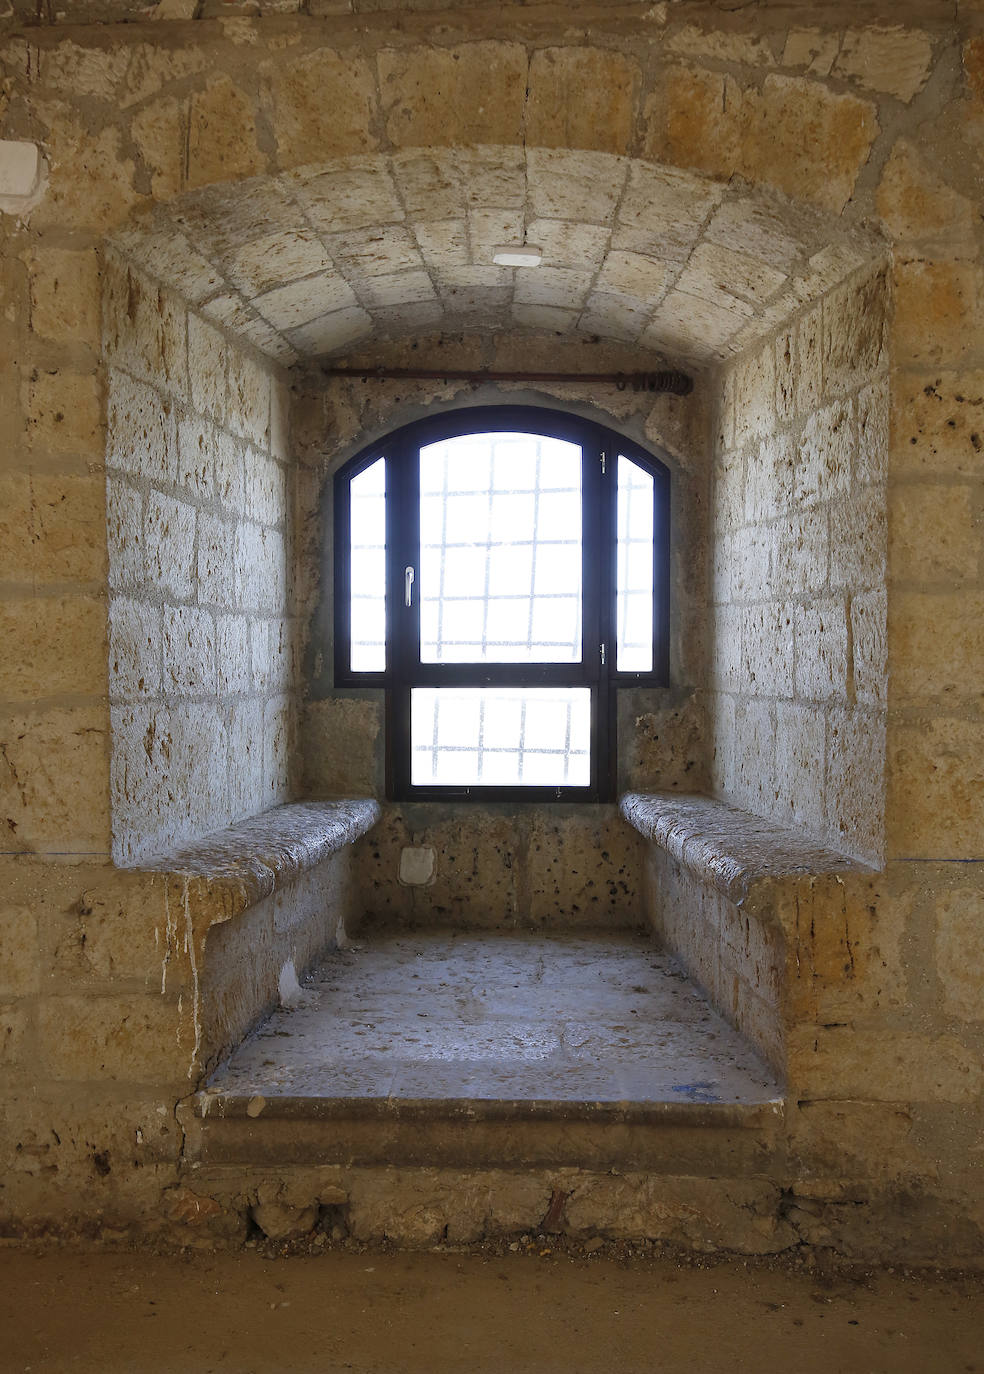 Fotos: Visita institucional al castillo de Monzón